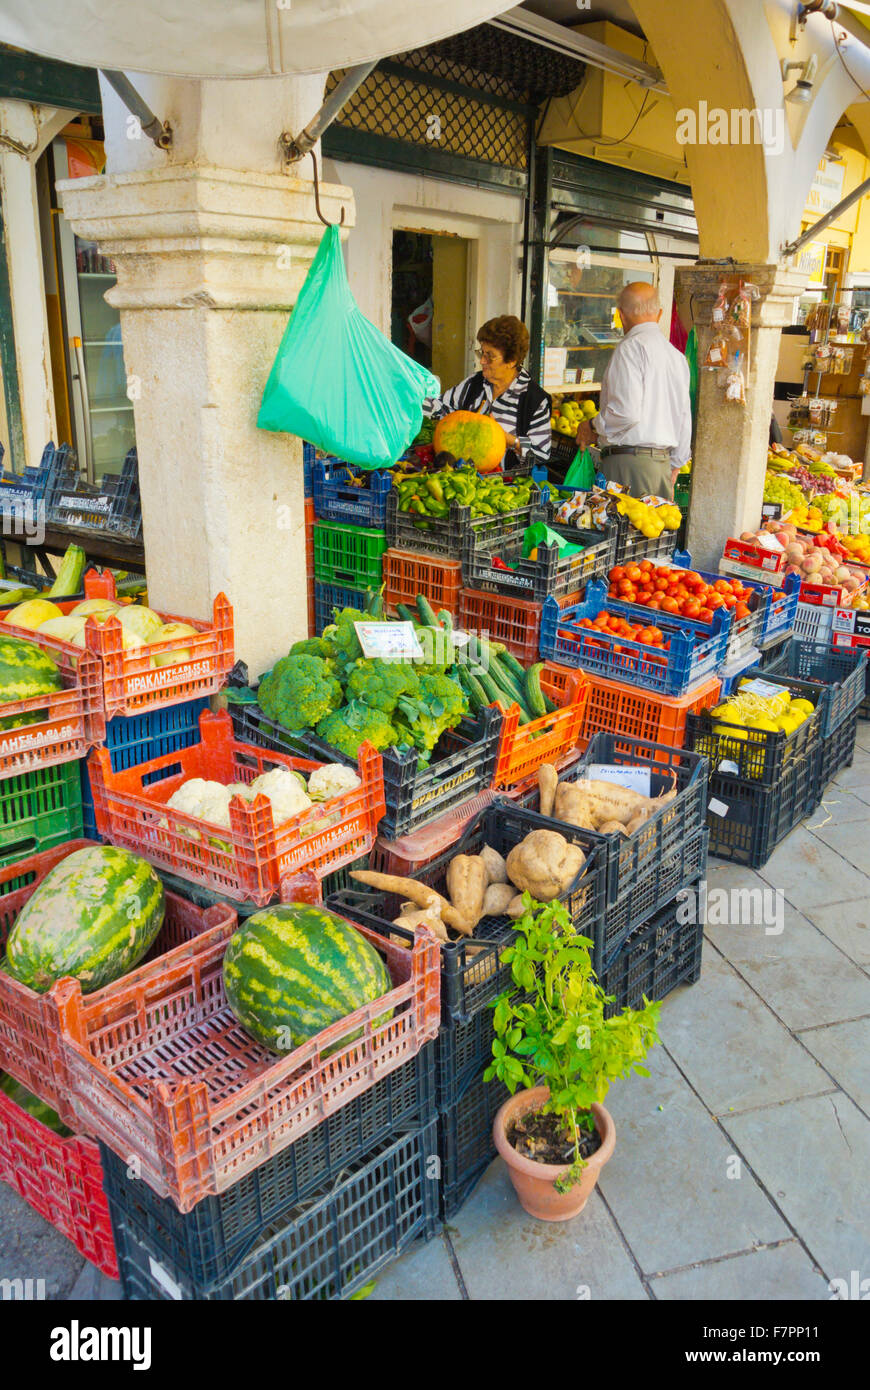 Negozio di generi alimentari, Nikiforou Theotoki street, città vecchia, Corfu, isole Ionie, Grecia Foto Stock